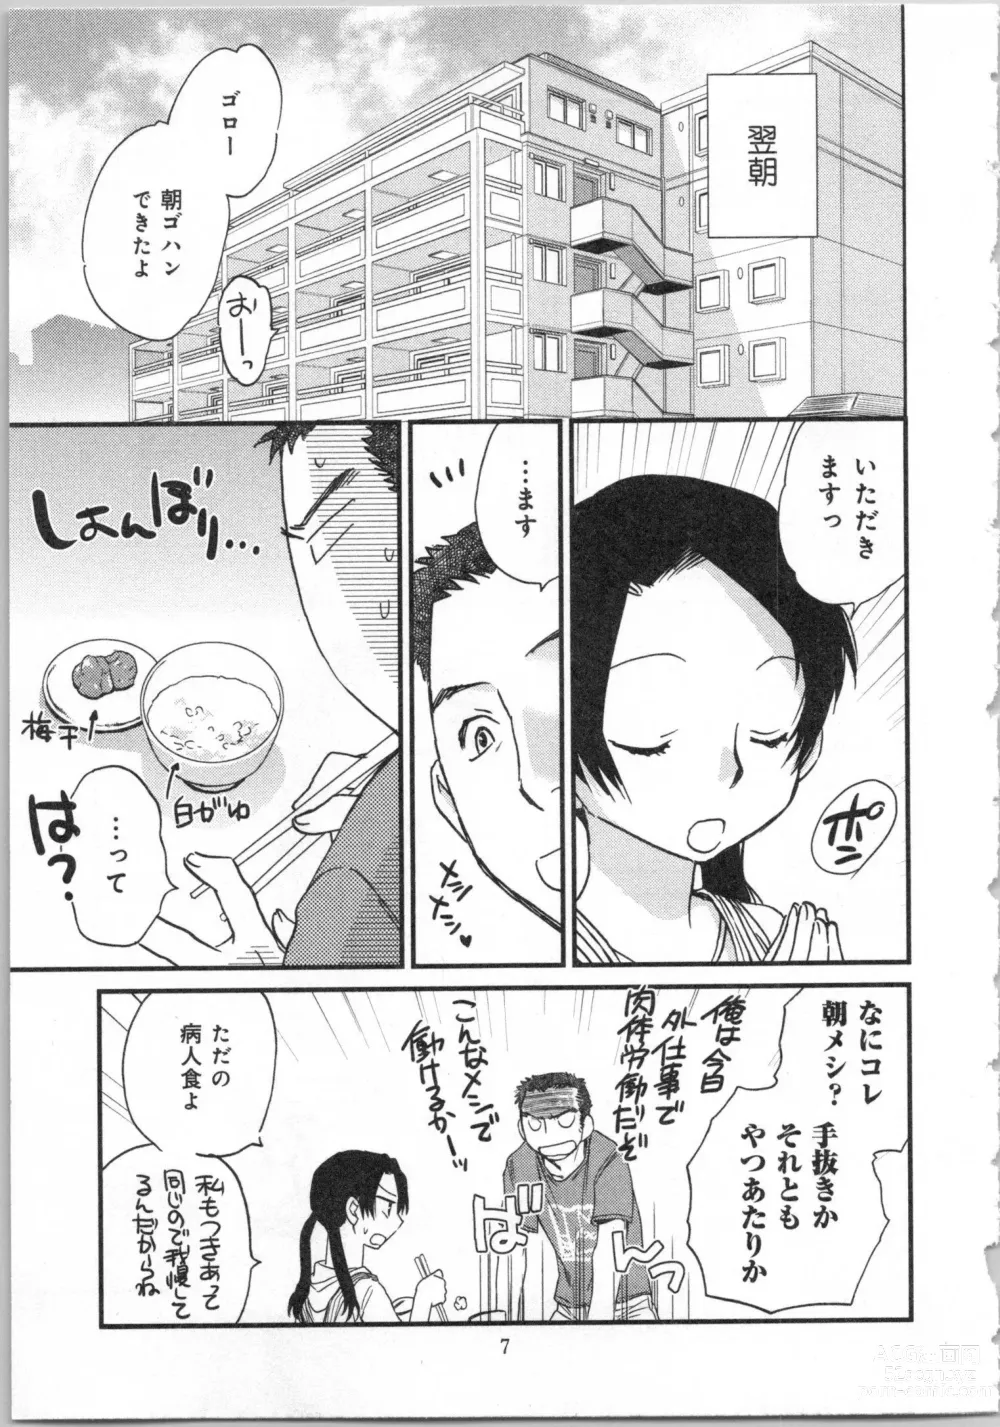 Page 9 of manga Issho ni Kurasu Tame no Yakusoku o Itsuka Vol 2